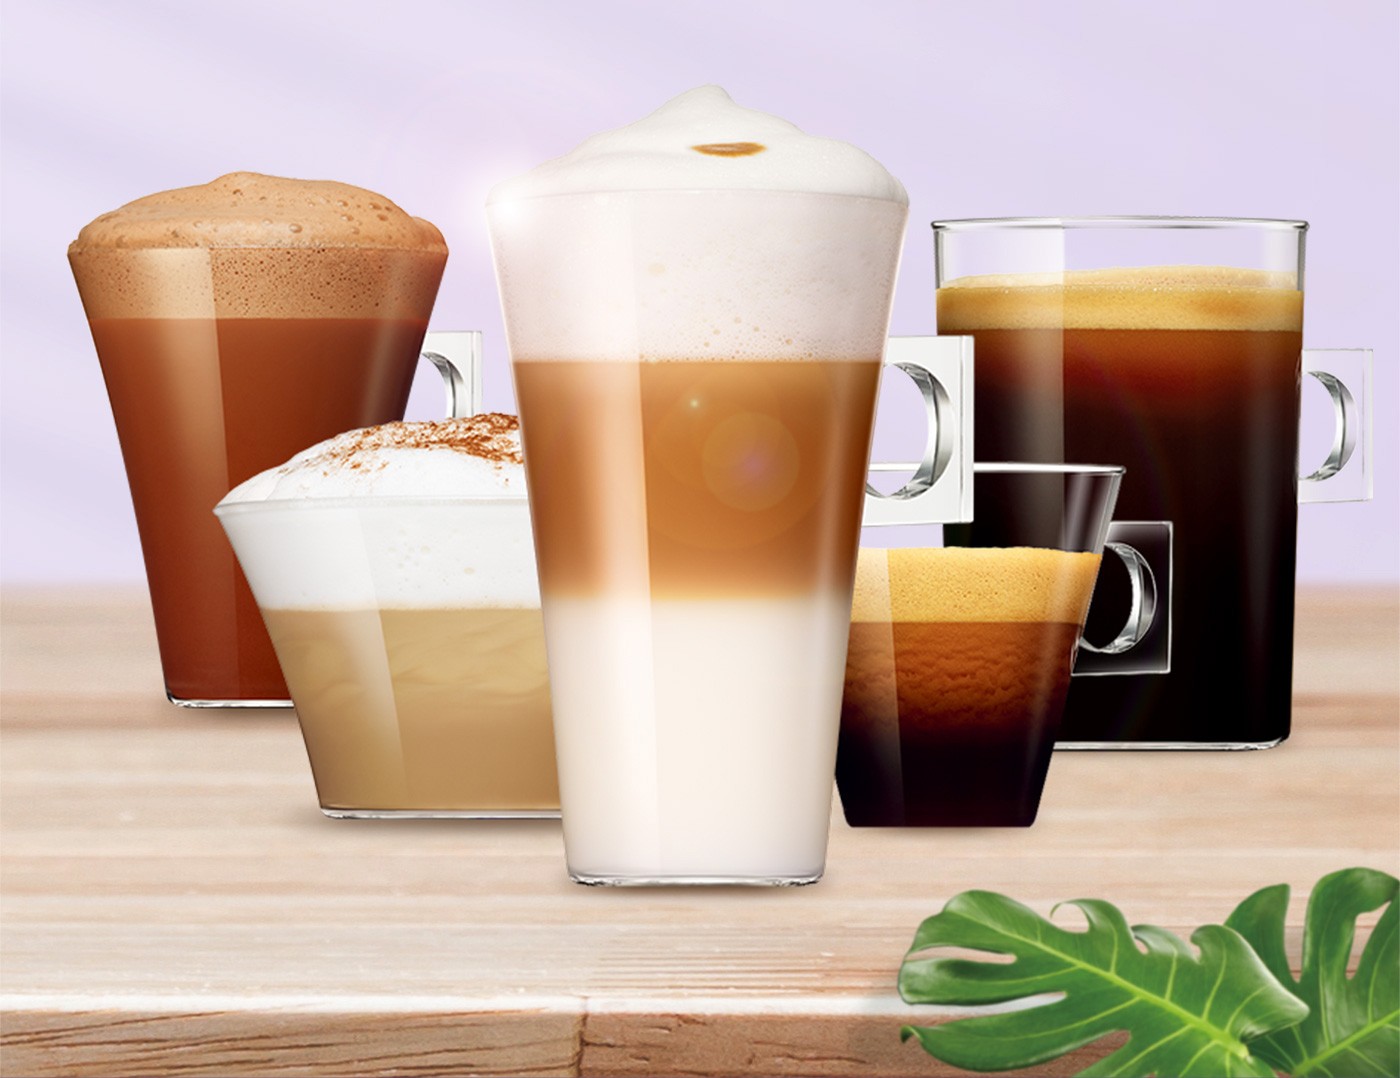 雀巢多趣酷思拿鐵瑪奇朵咖啡膠囊組,在熱騰騰的牛奶當中,注入滑順濃郁的義式濃縮咖啡,可得一杯散發香甜風味的拿鐵咖啡.